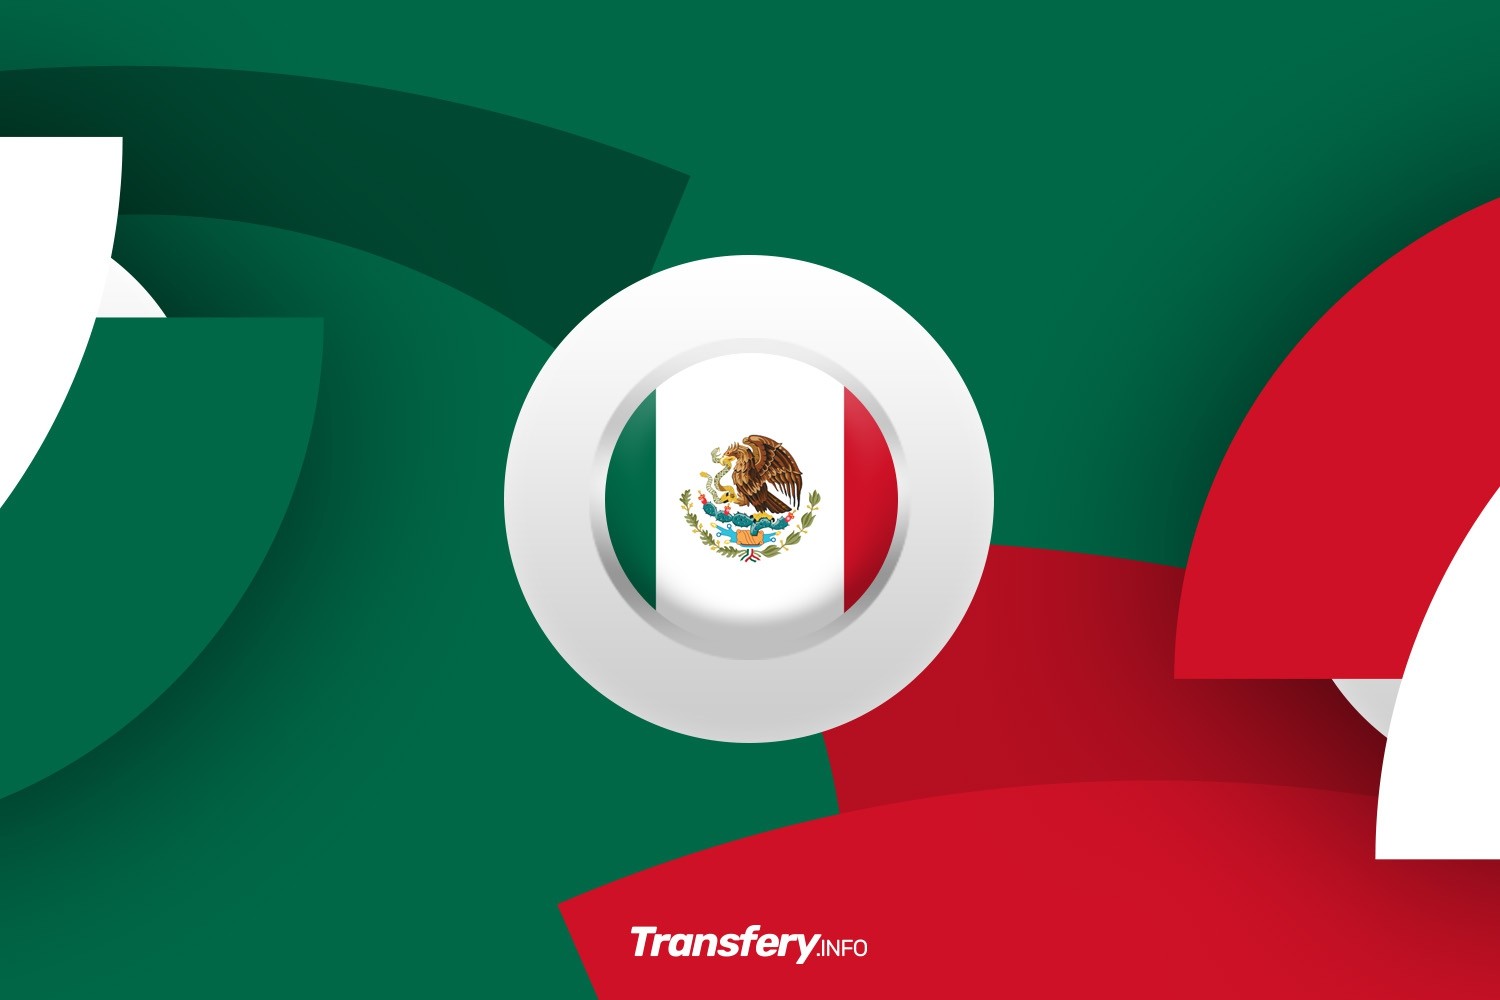 OFICJALNIE: Bramkarz z ligi meksykańskiej ukarany za oślepianie przeciwnika laserem